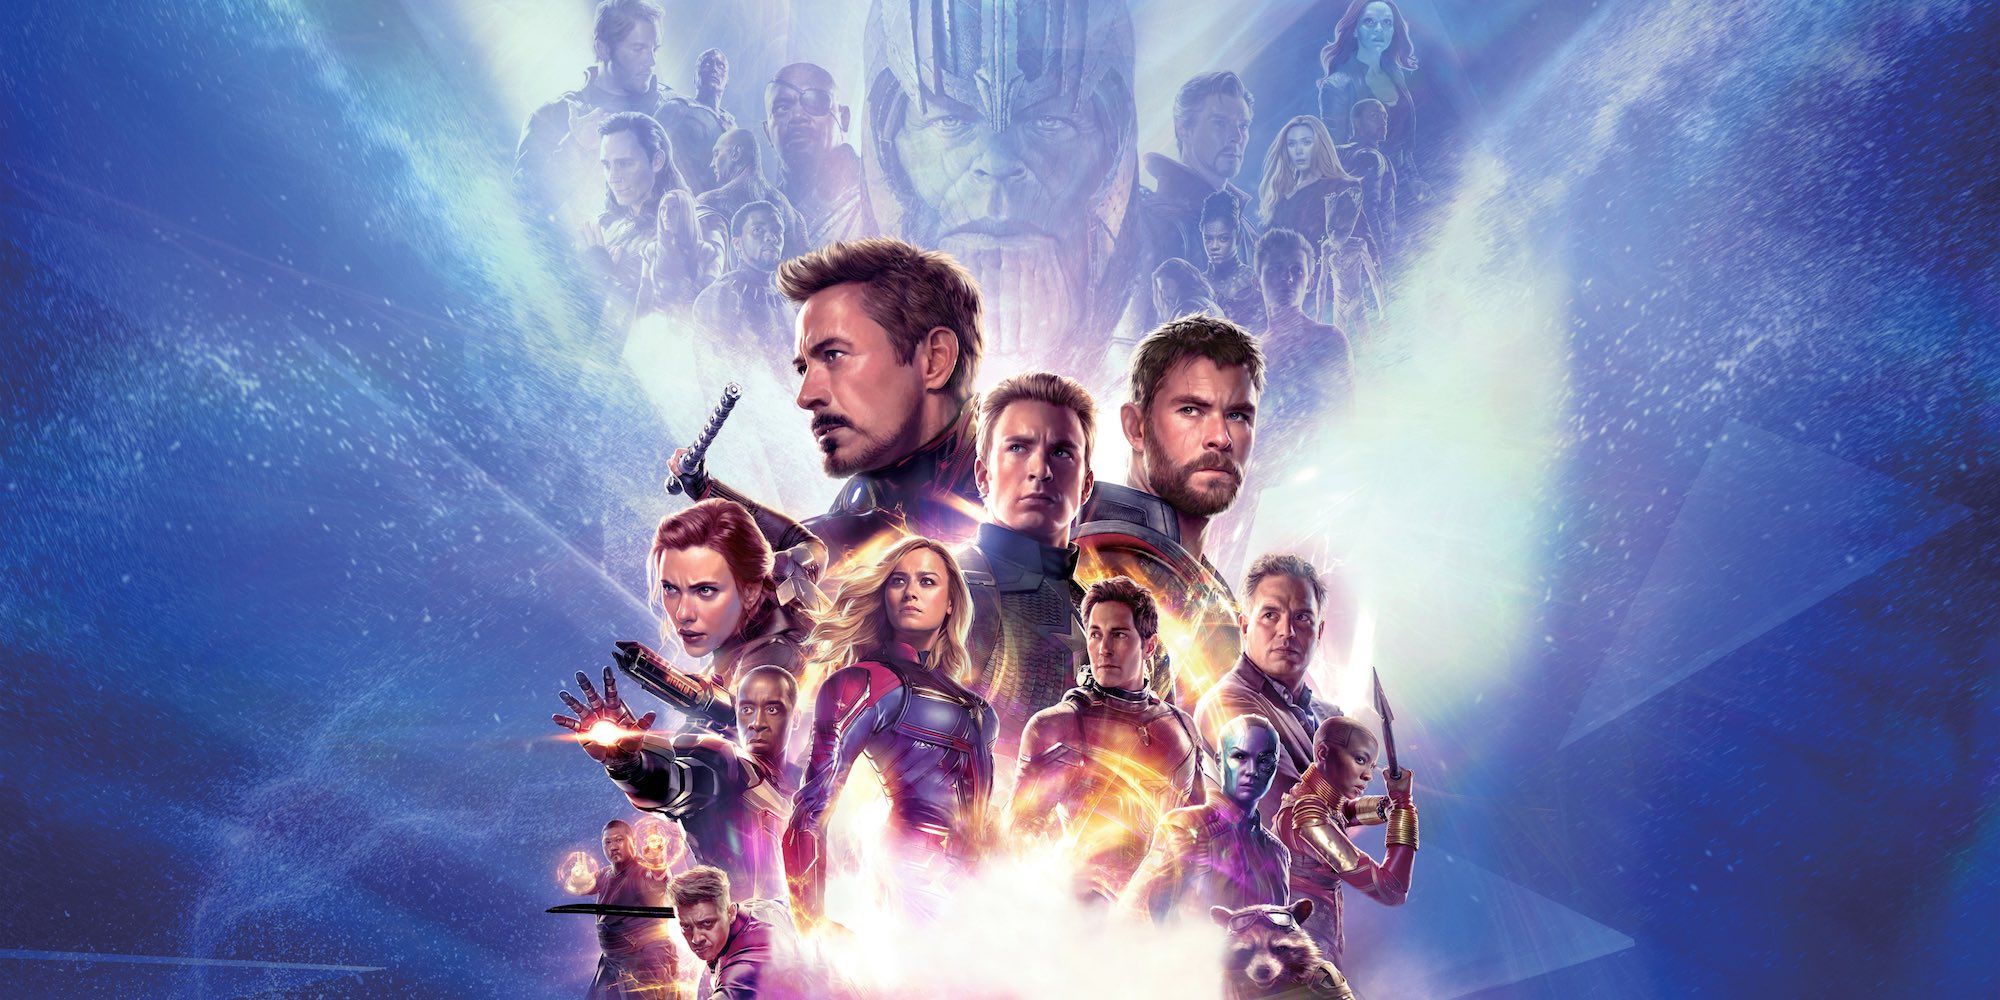 Avengers Endgame movie poster - 11 x 17 - Thor poster (b) Chris Hemsworth